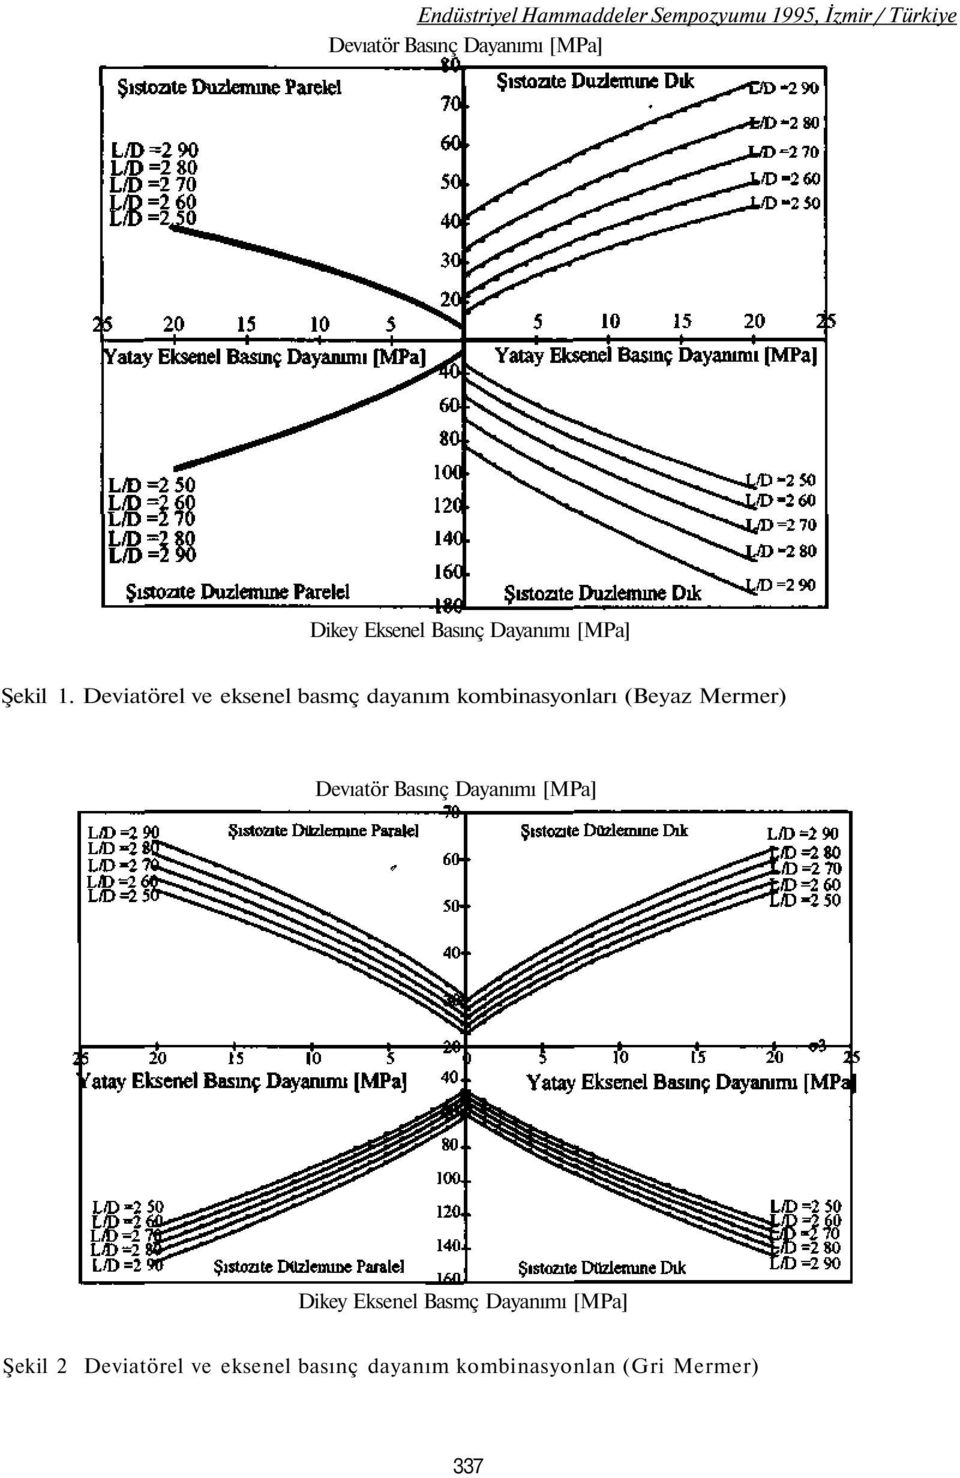 Deviatörel ve eksenel basmç dayanım kombinasyonları (Beyaz Mermer) Devıatör Basınç